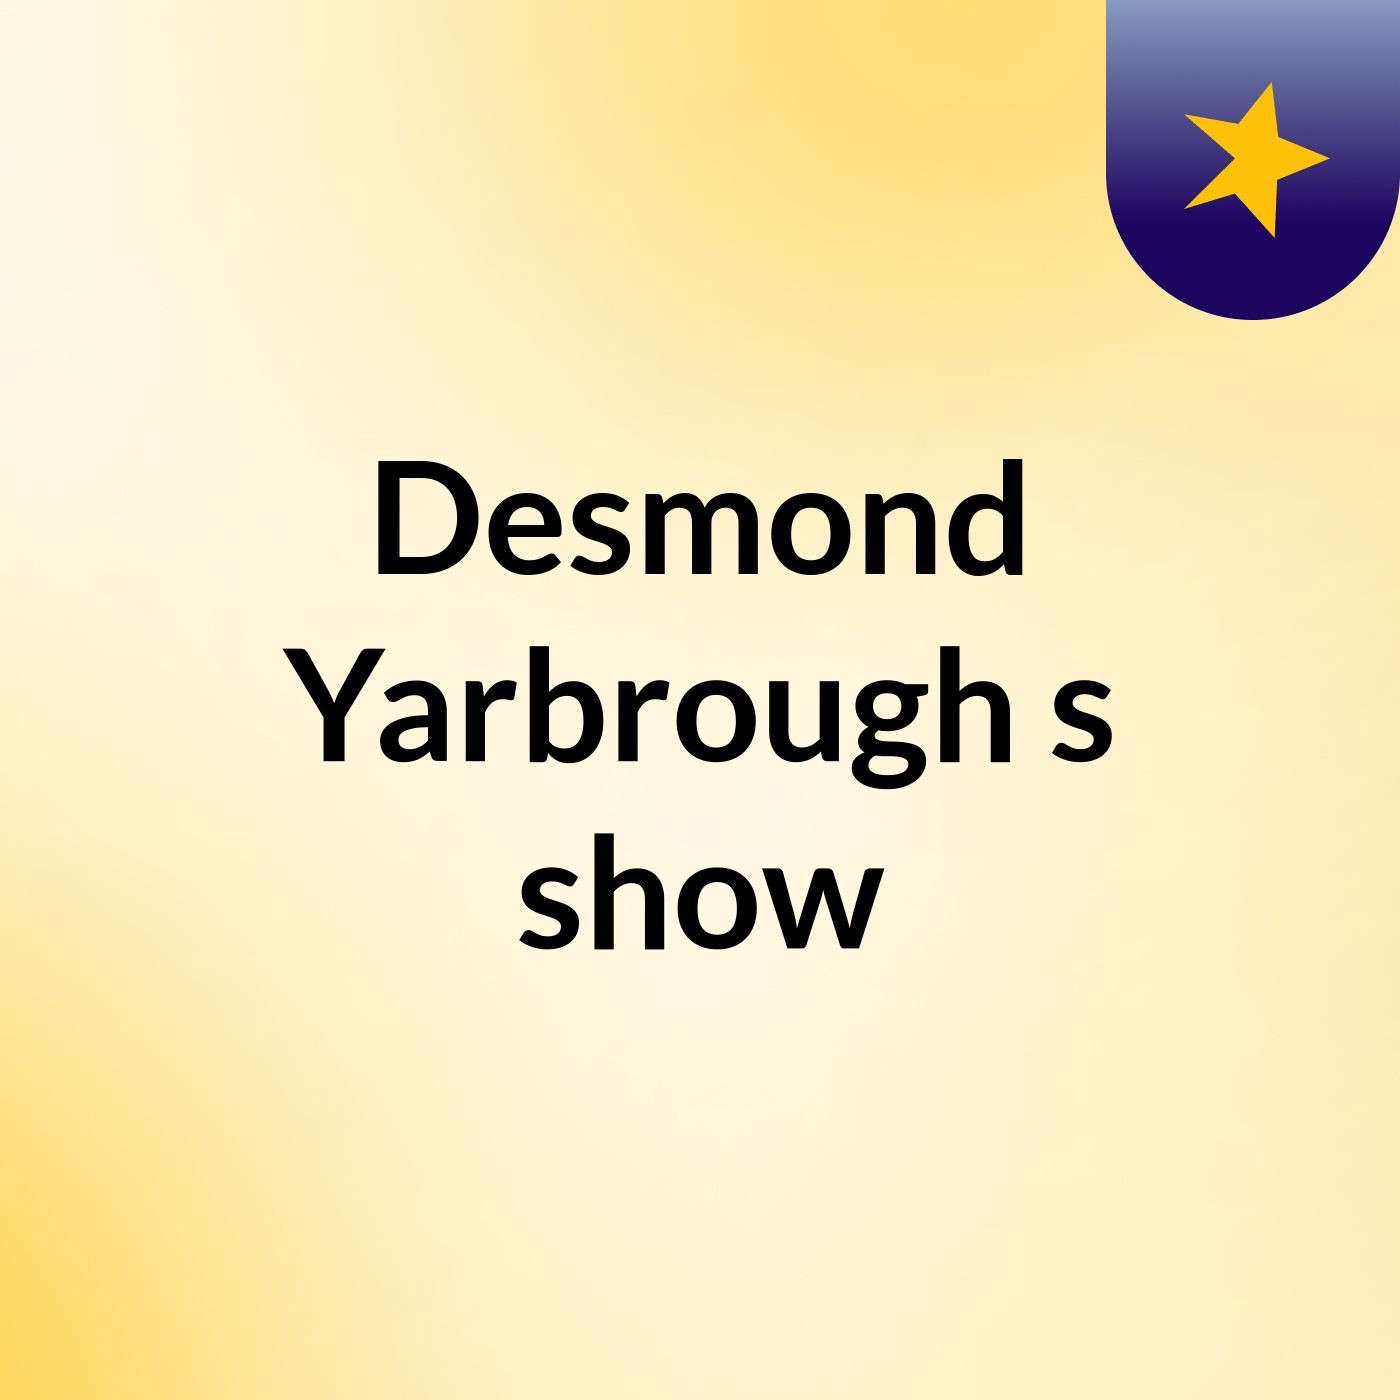 Episode 10 - Desmond Yarbrough's show